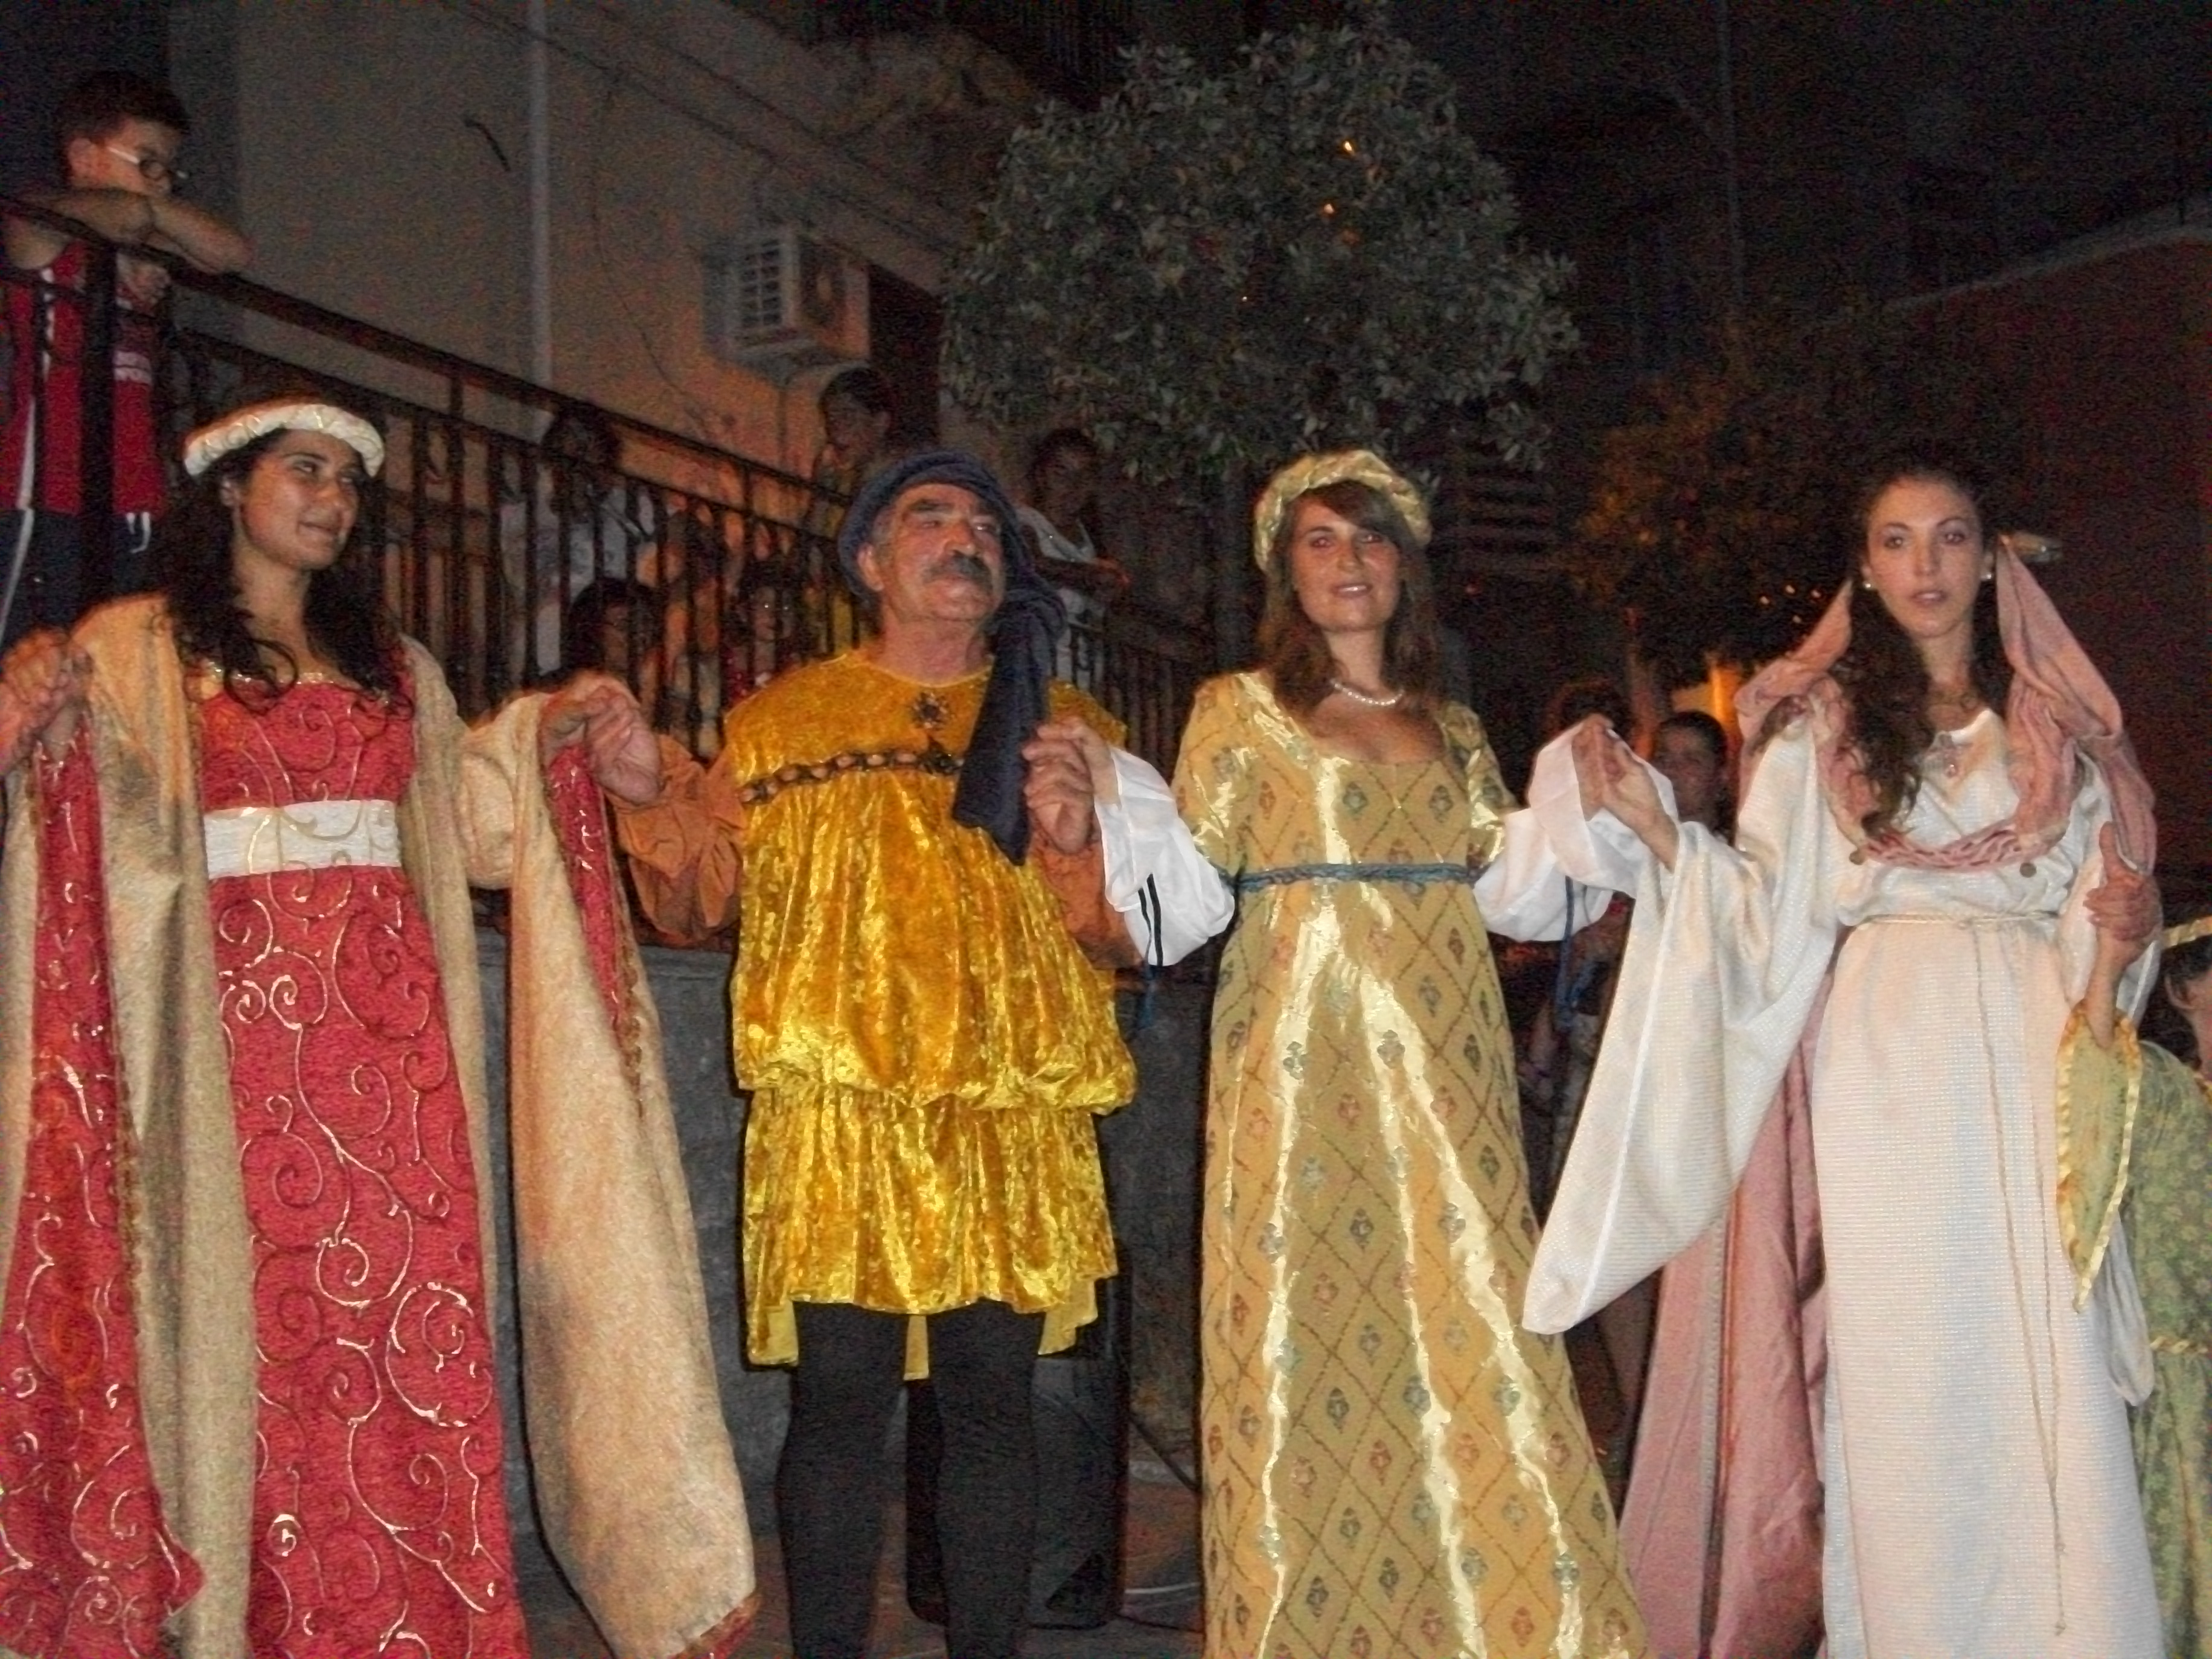 festa medievale tenutasi a Melito vecchio